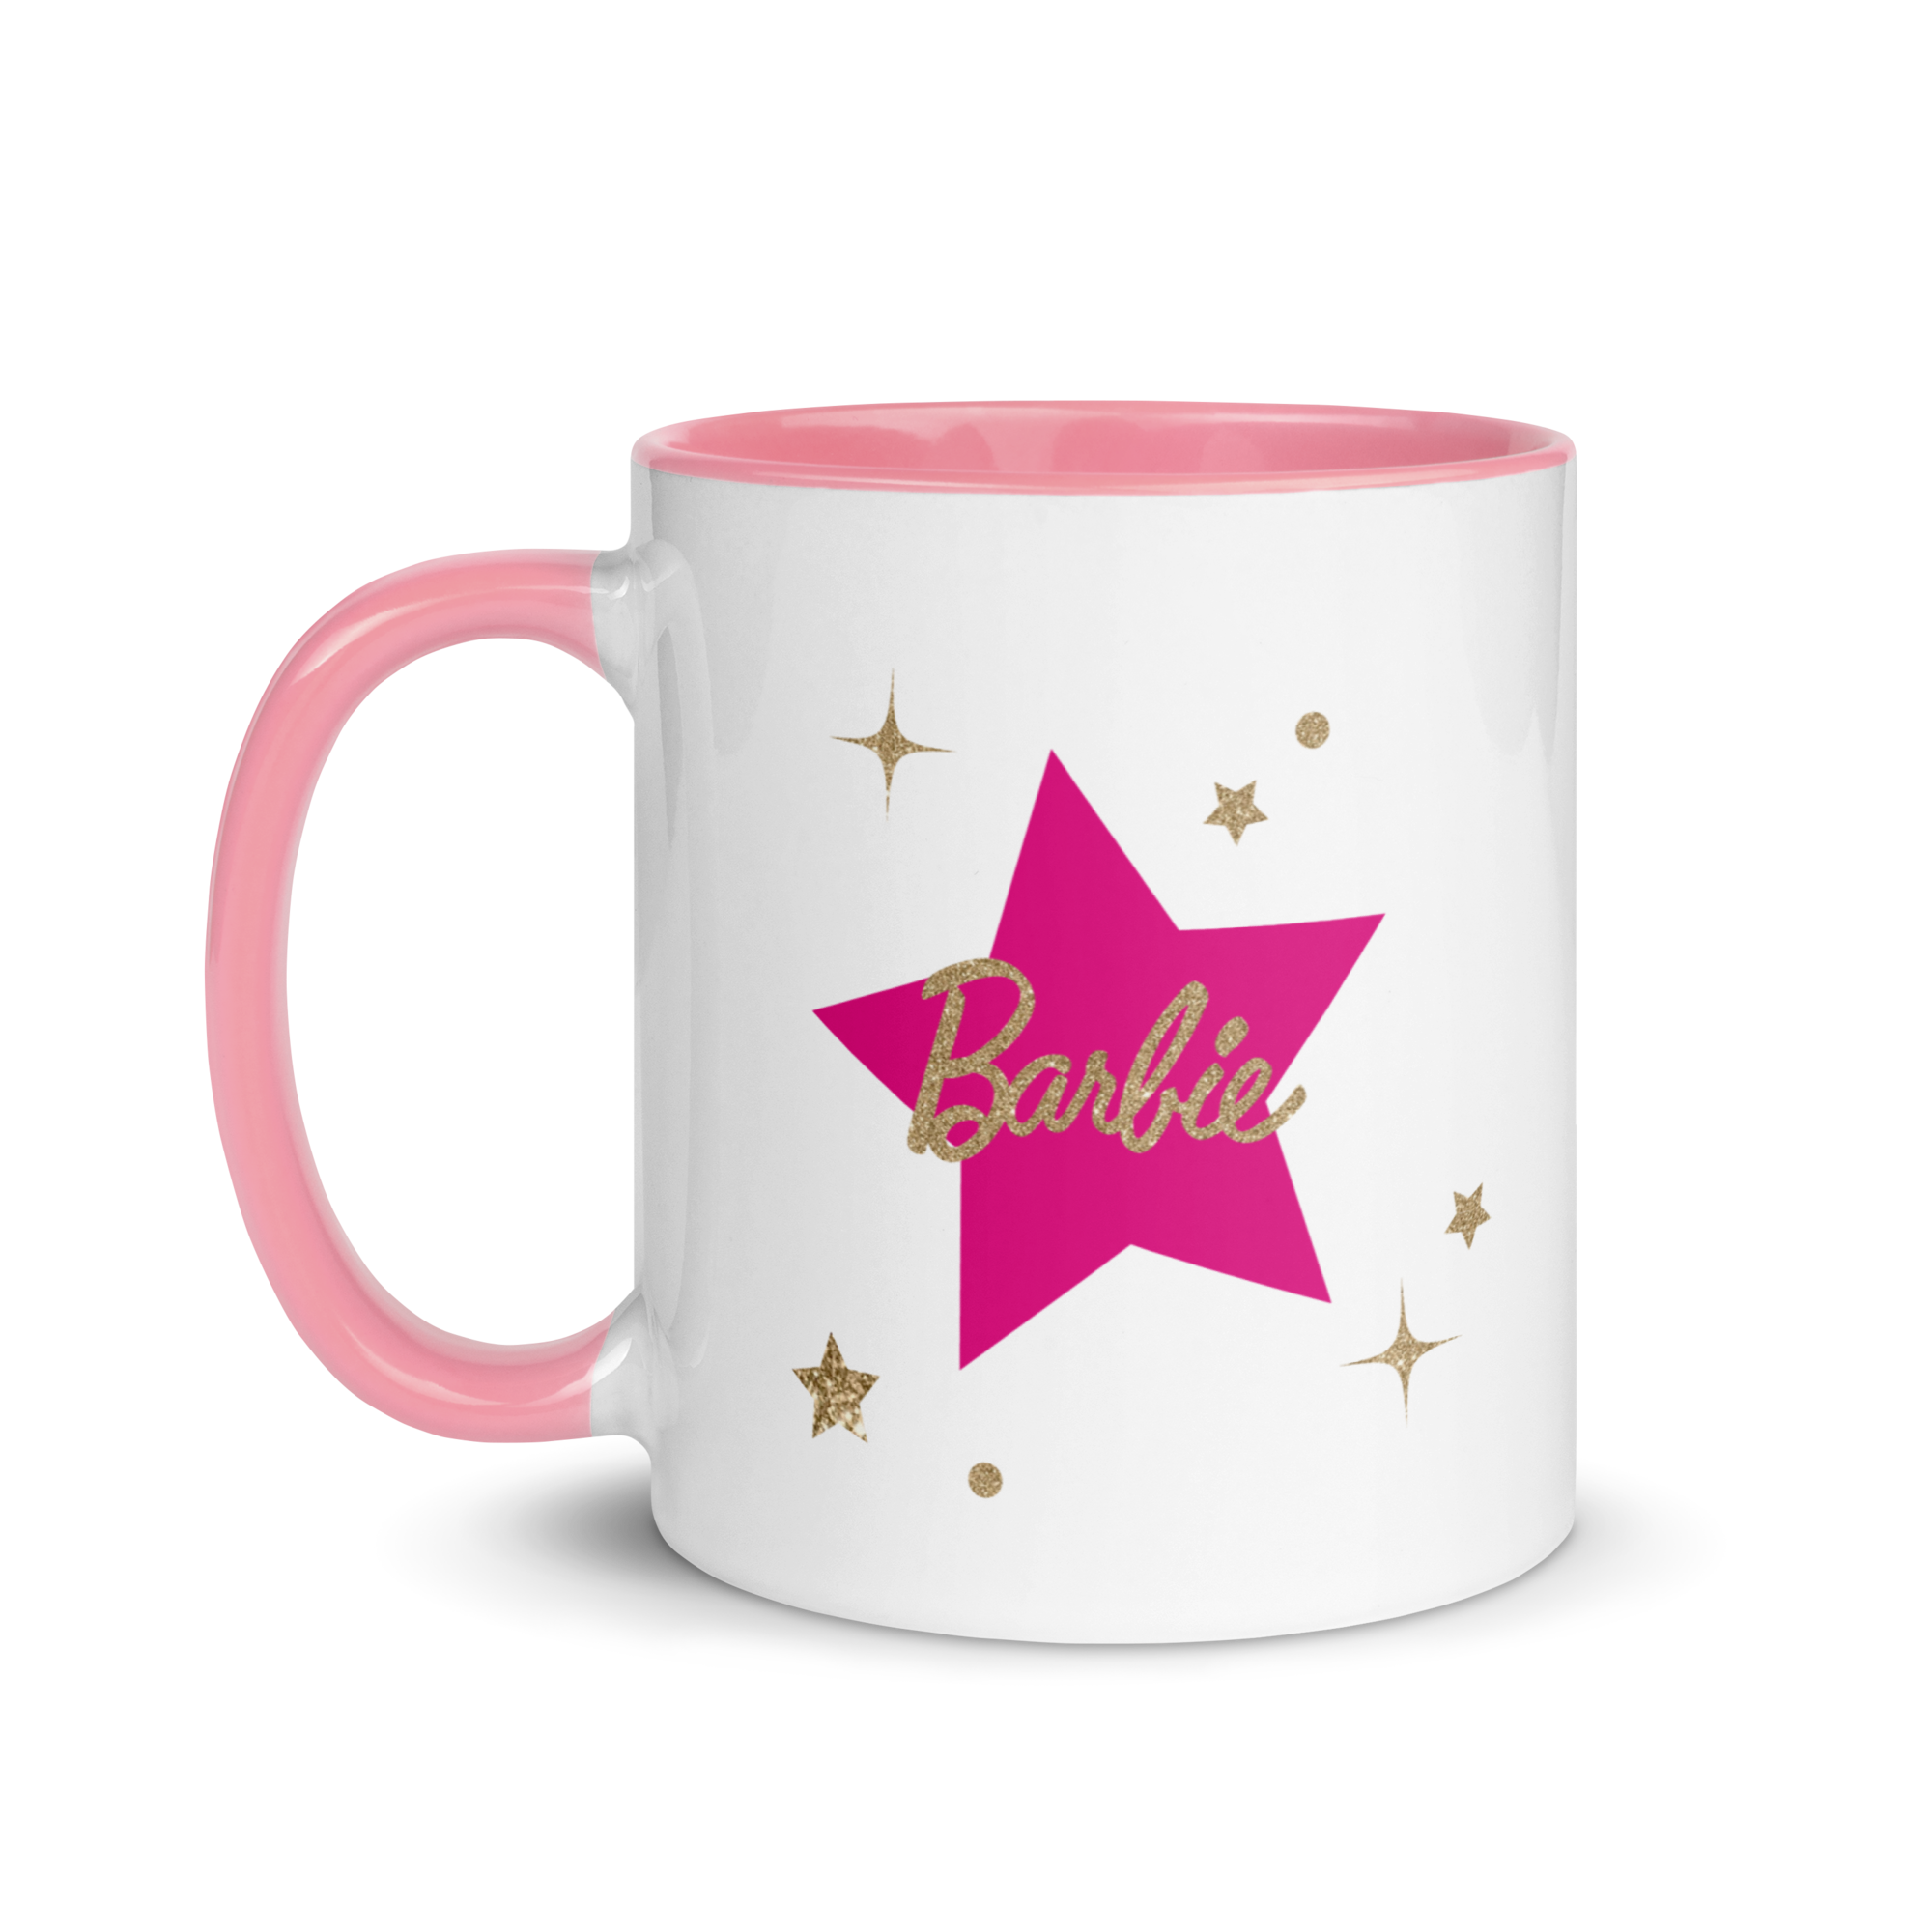 Barbie Merry and Bright Mug